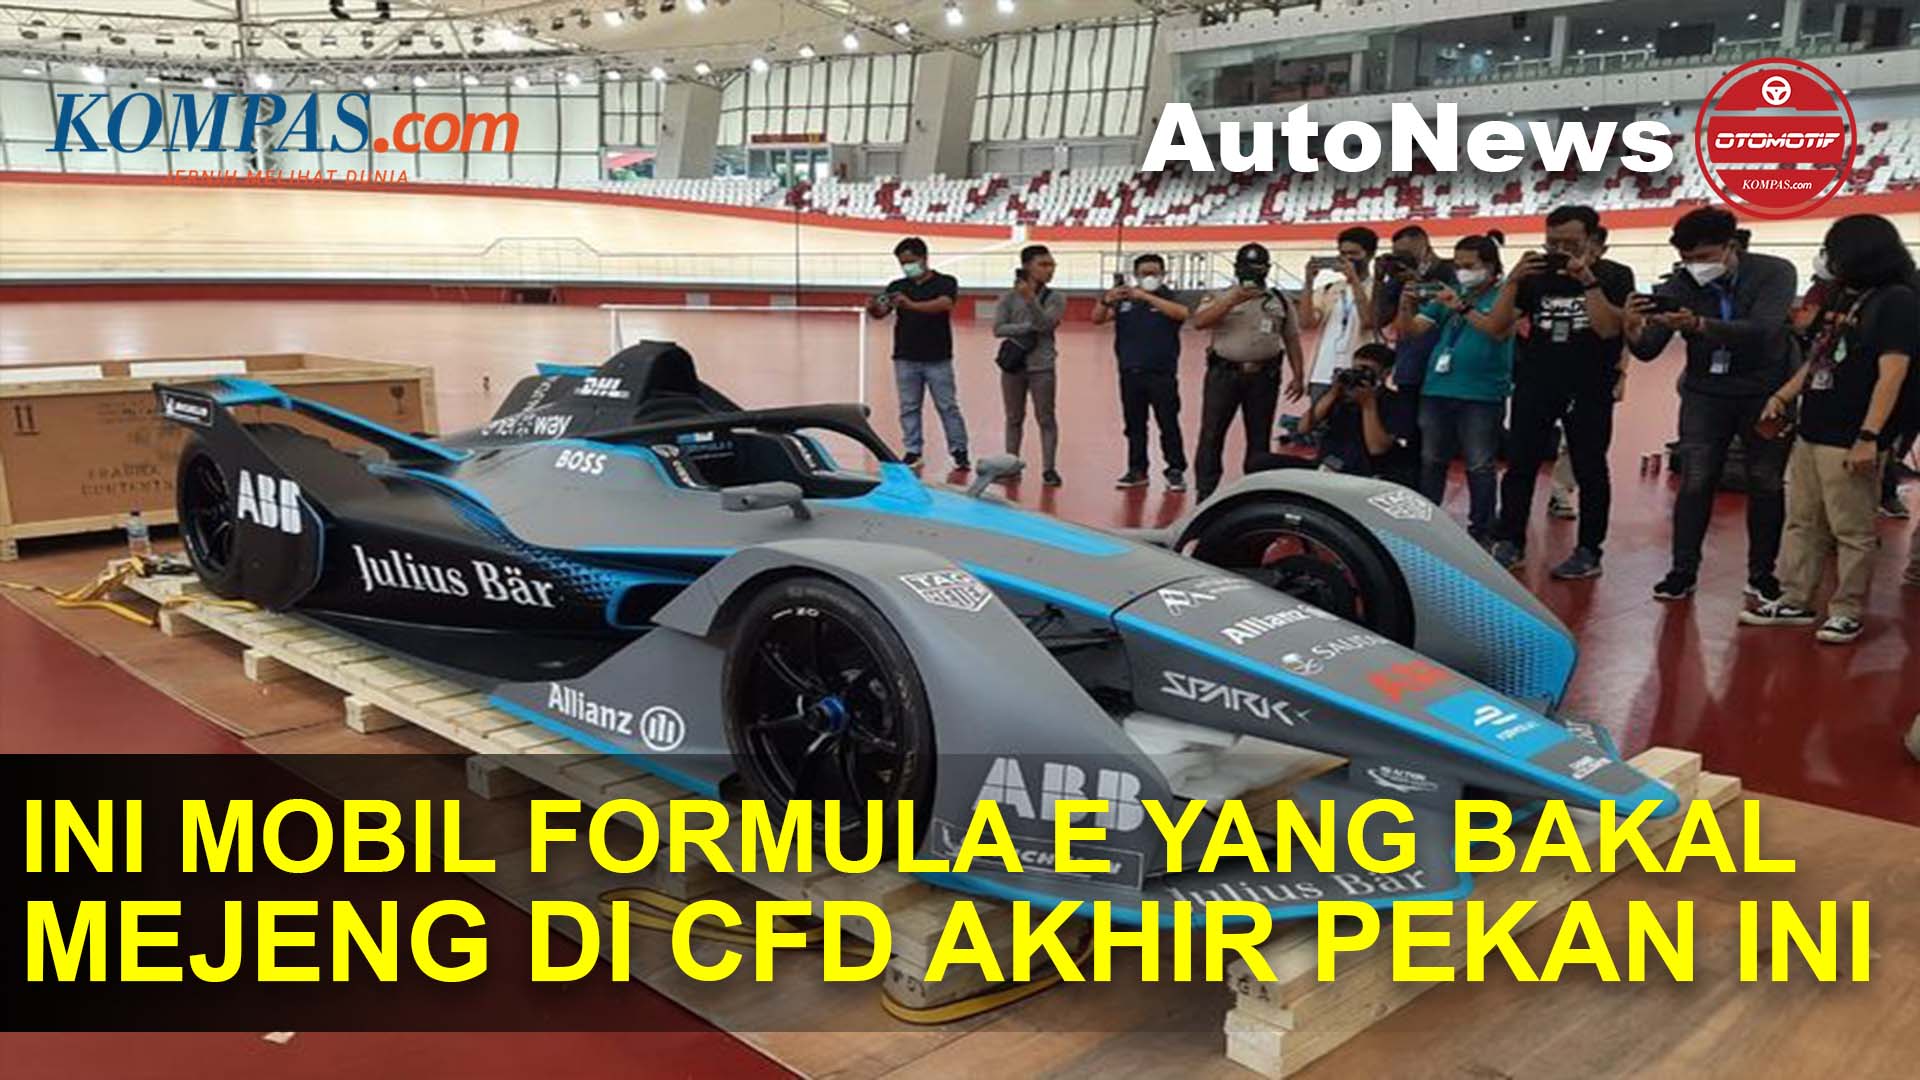 Tiba di Jakarta, Mobil Formula E Bakal Dipamerkan di CFD